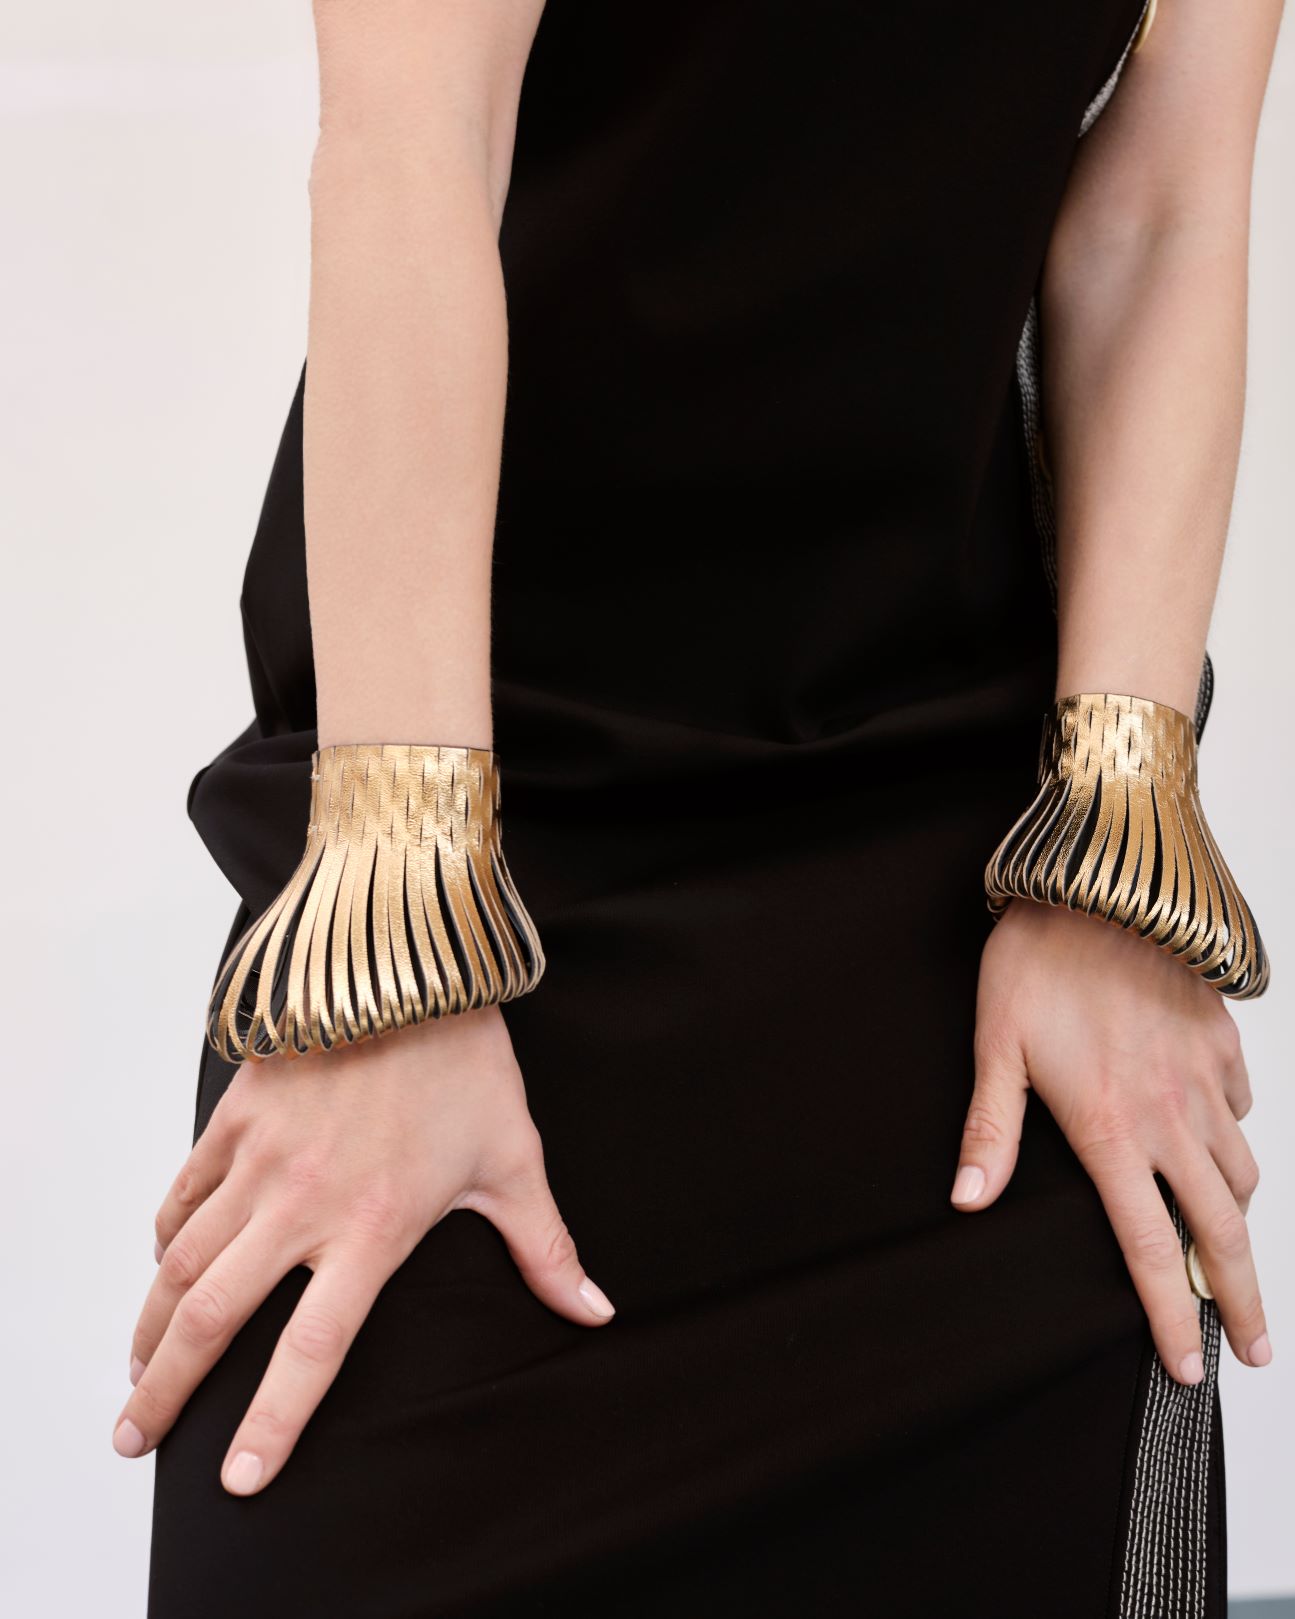 Lolita Cuffs in Gold Leather. Image Courtesy of So-Le Studio